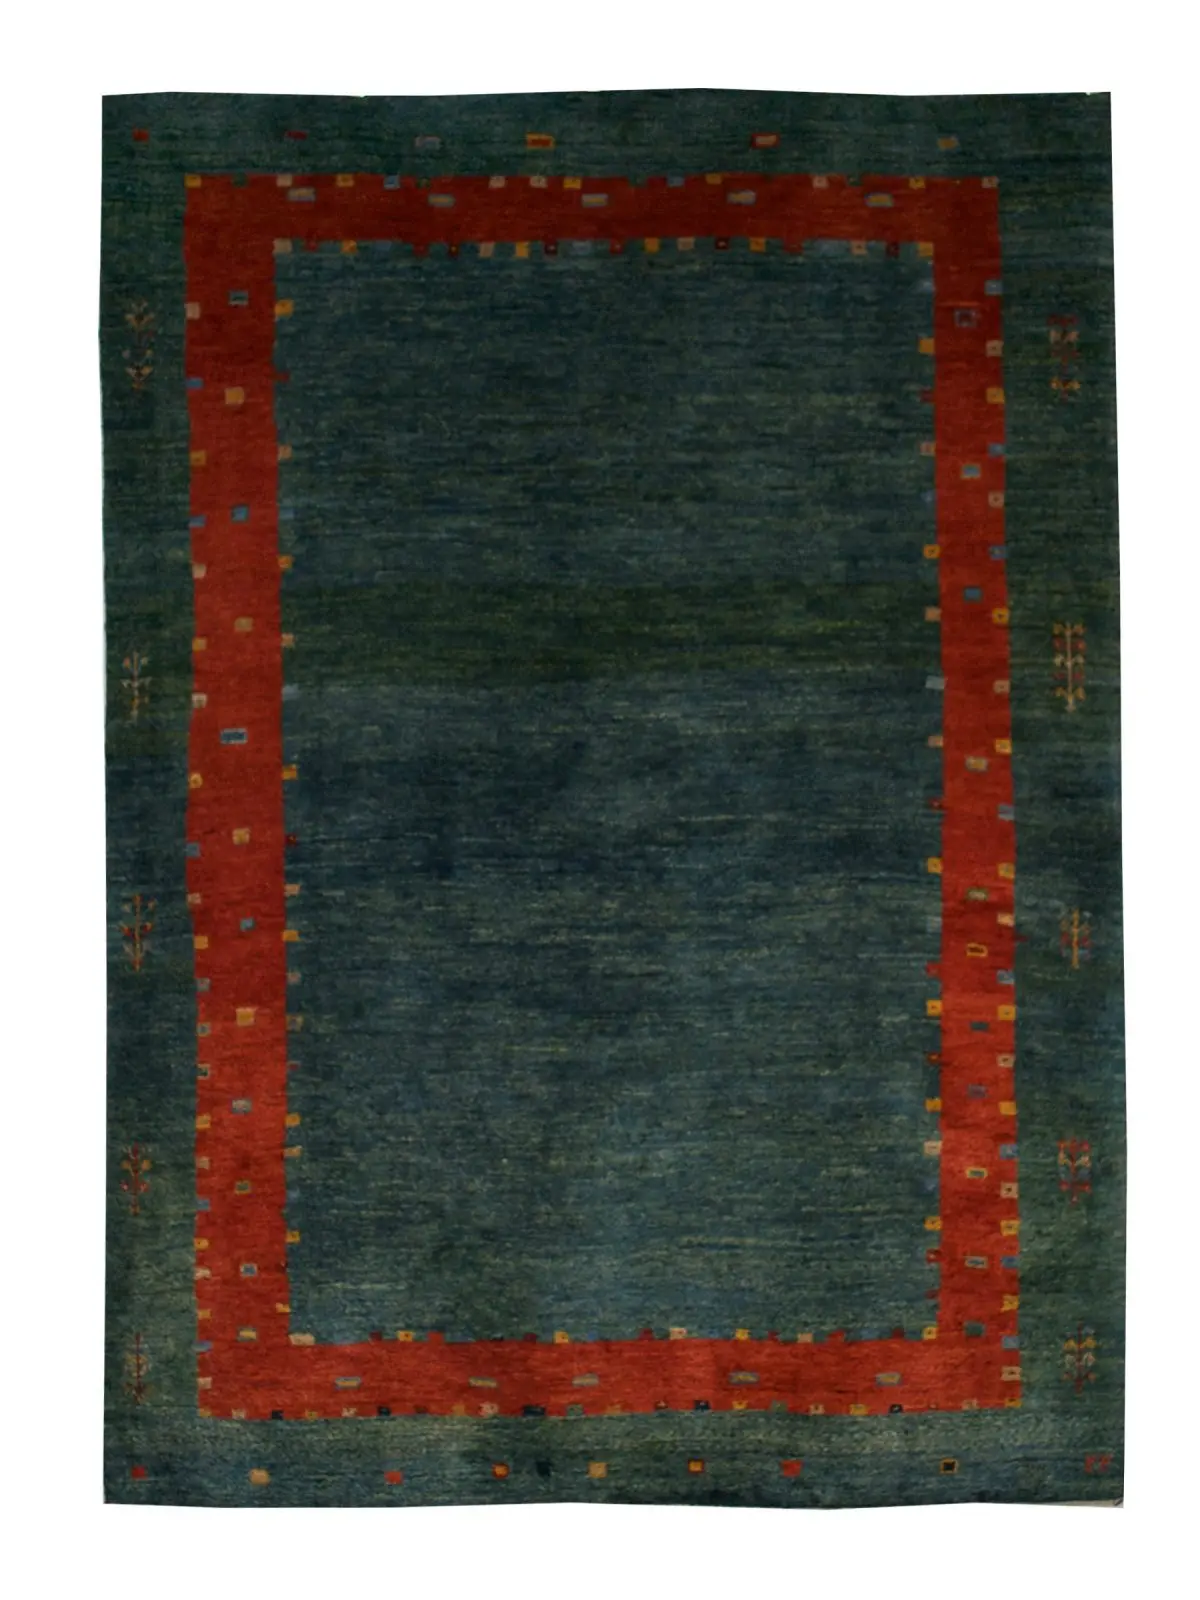 Persian Gabbeh Rug 4' 1" x 5' 5" Green Wool Handmade Area Rug - Shabahang Royal Carpet